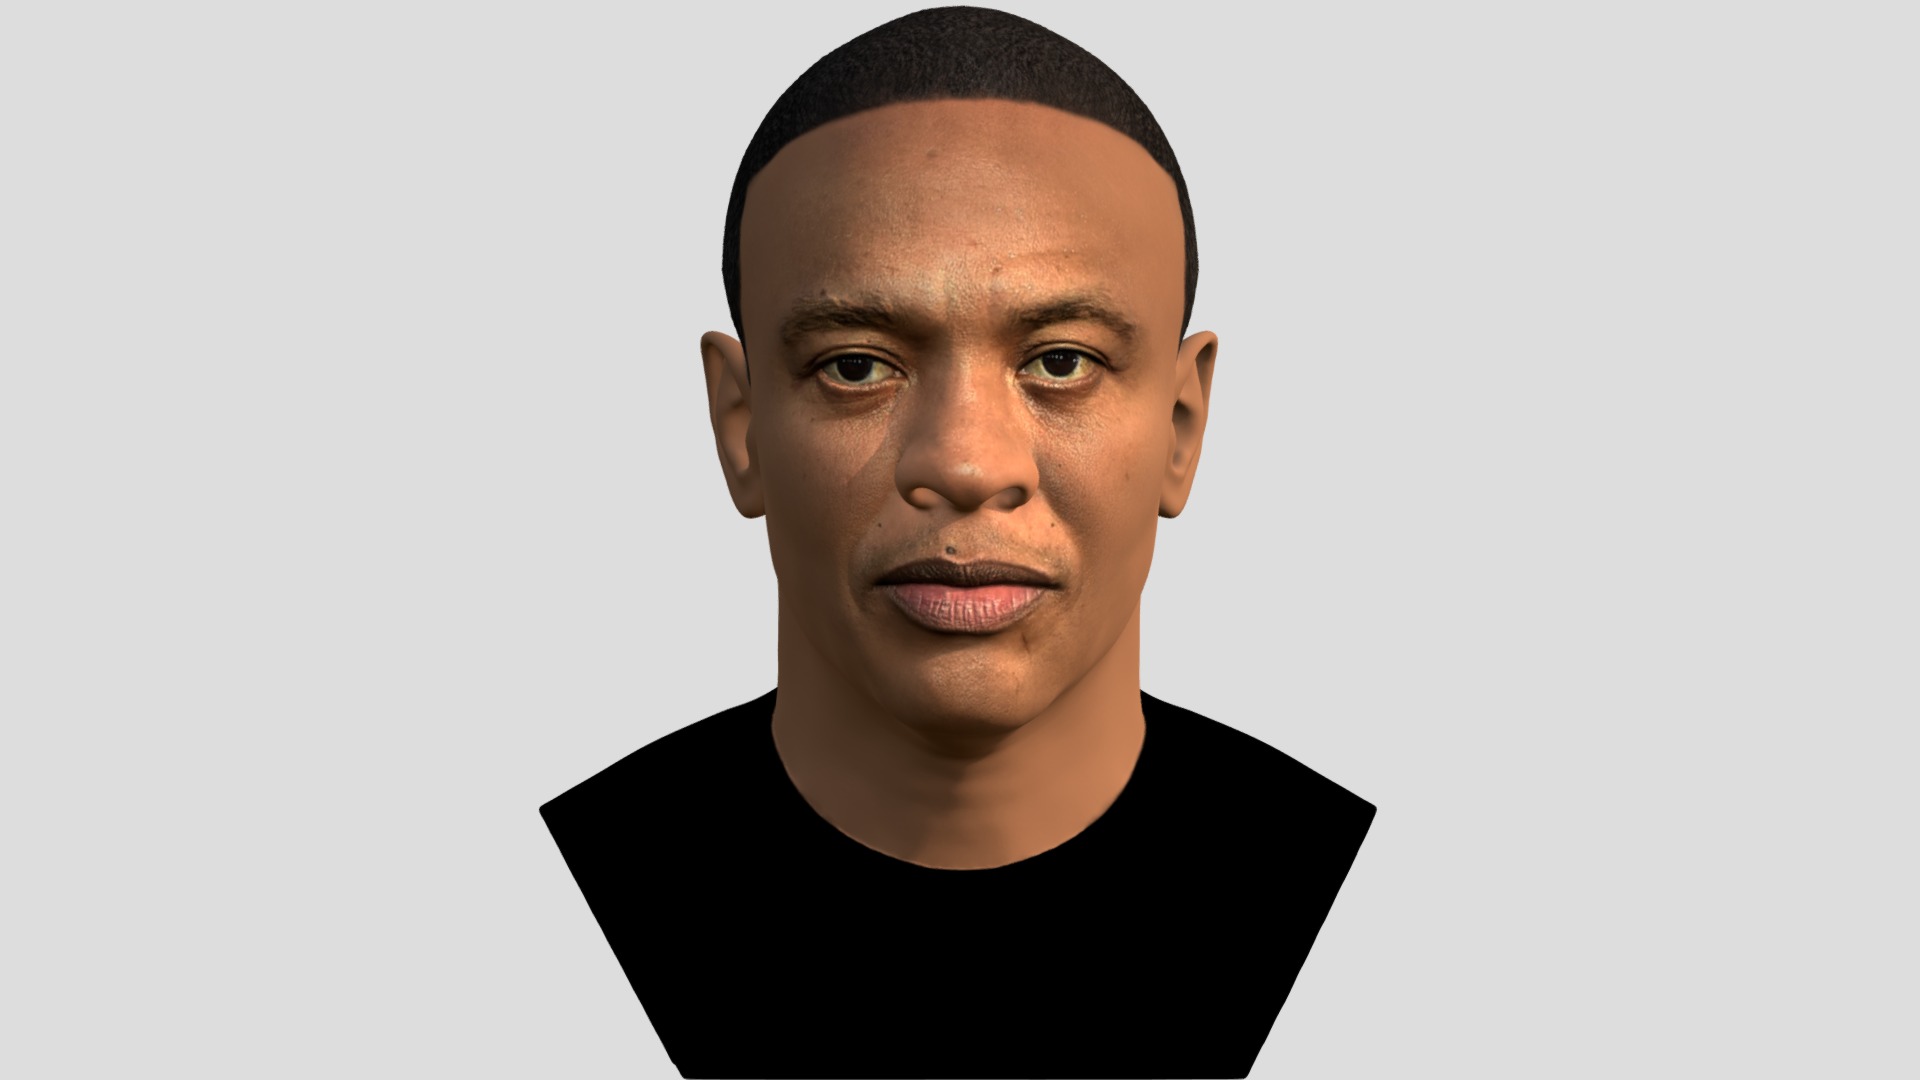 3D model Dr Dre bust for full color 3D printing - This is a 3D model of the Dr Dre bust for full color 3D printing. The 3D model is about a person with a black shirt.